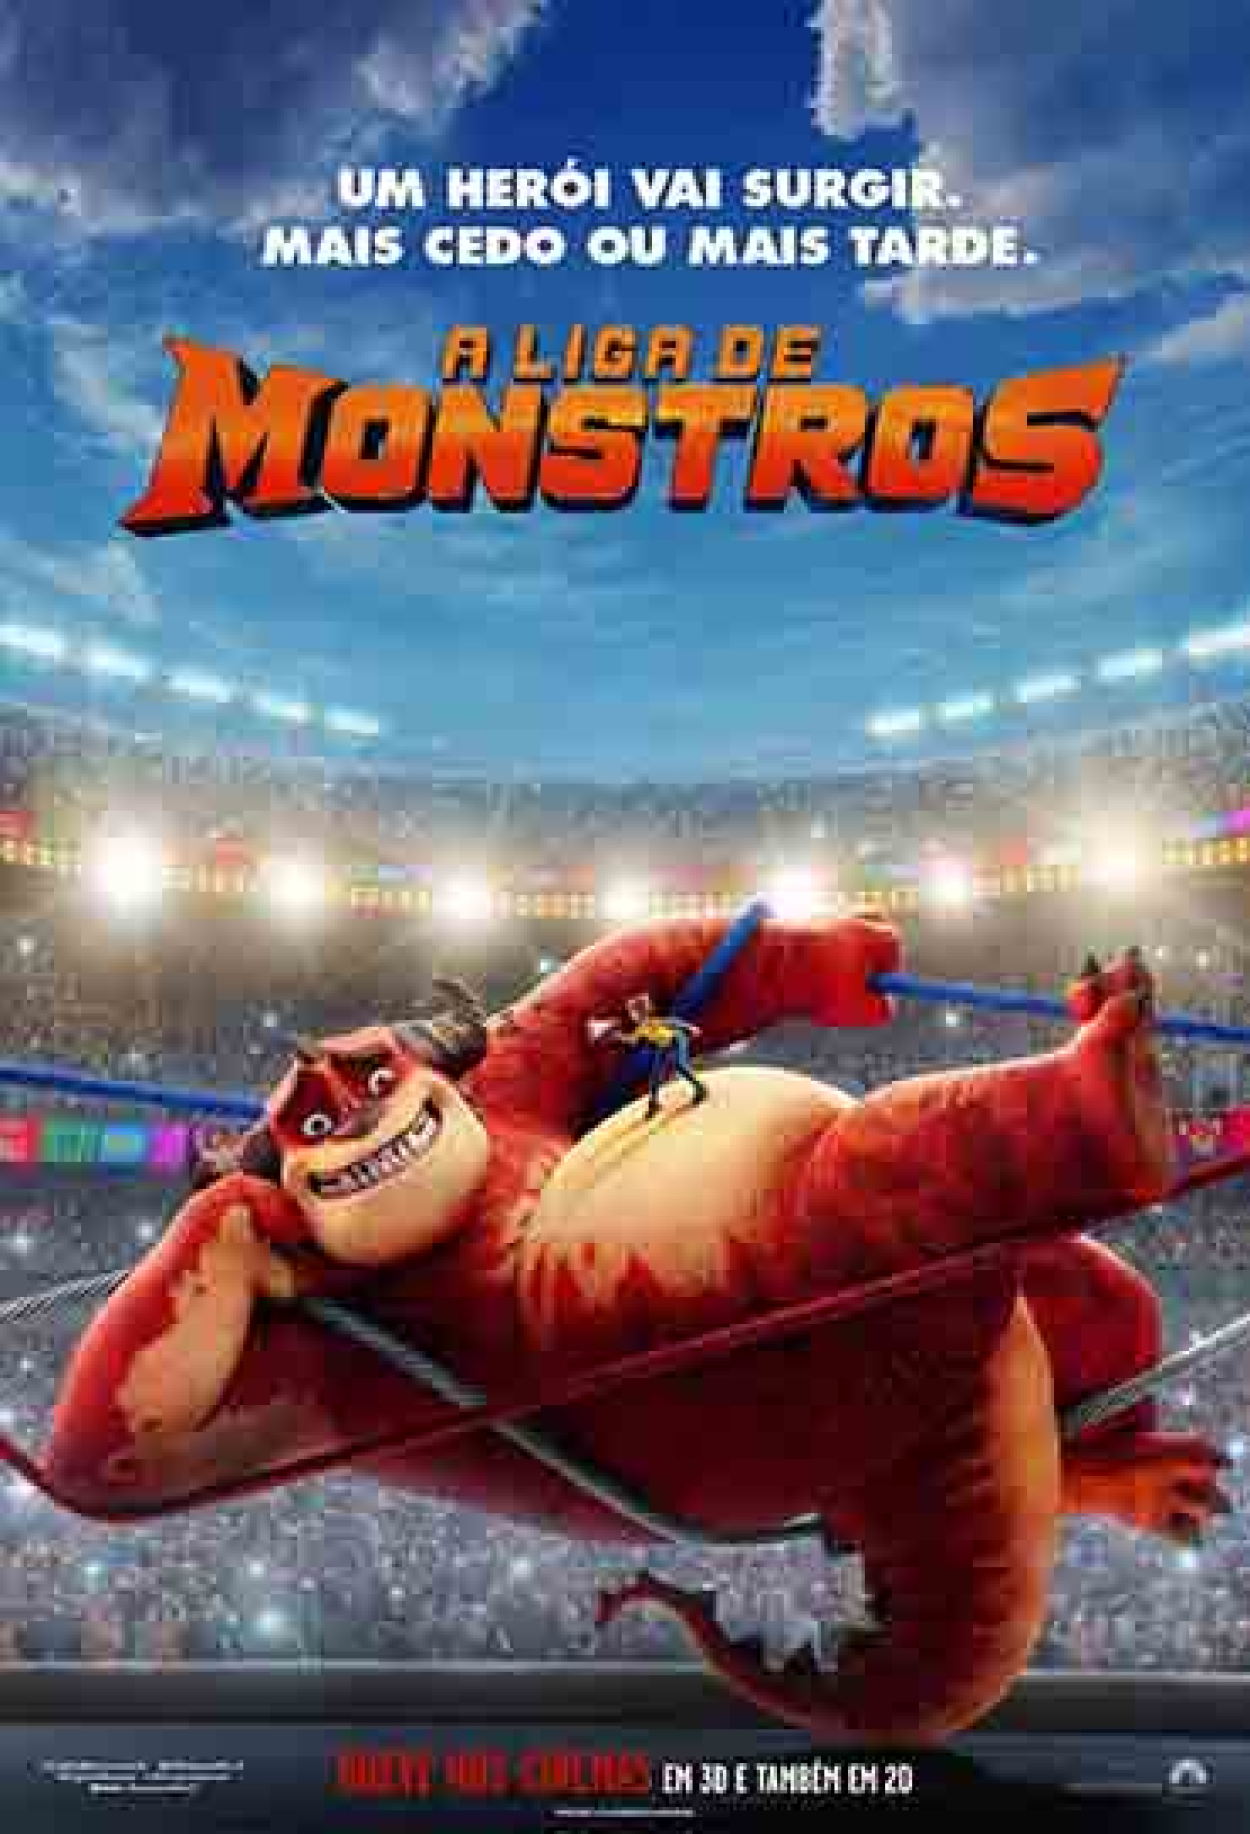 Monstros S.A. 3D (Filme), Trailer, Sinopse e Curiosidades - Cinema10